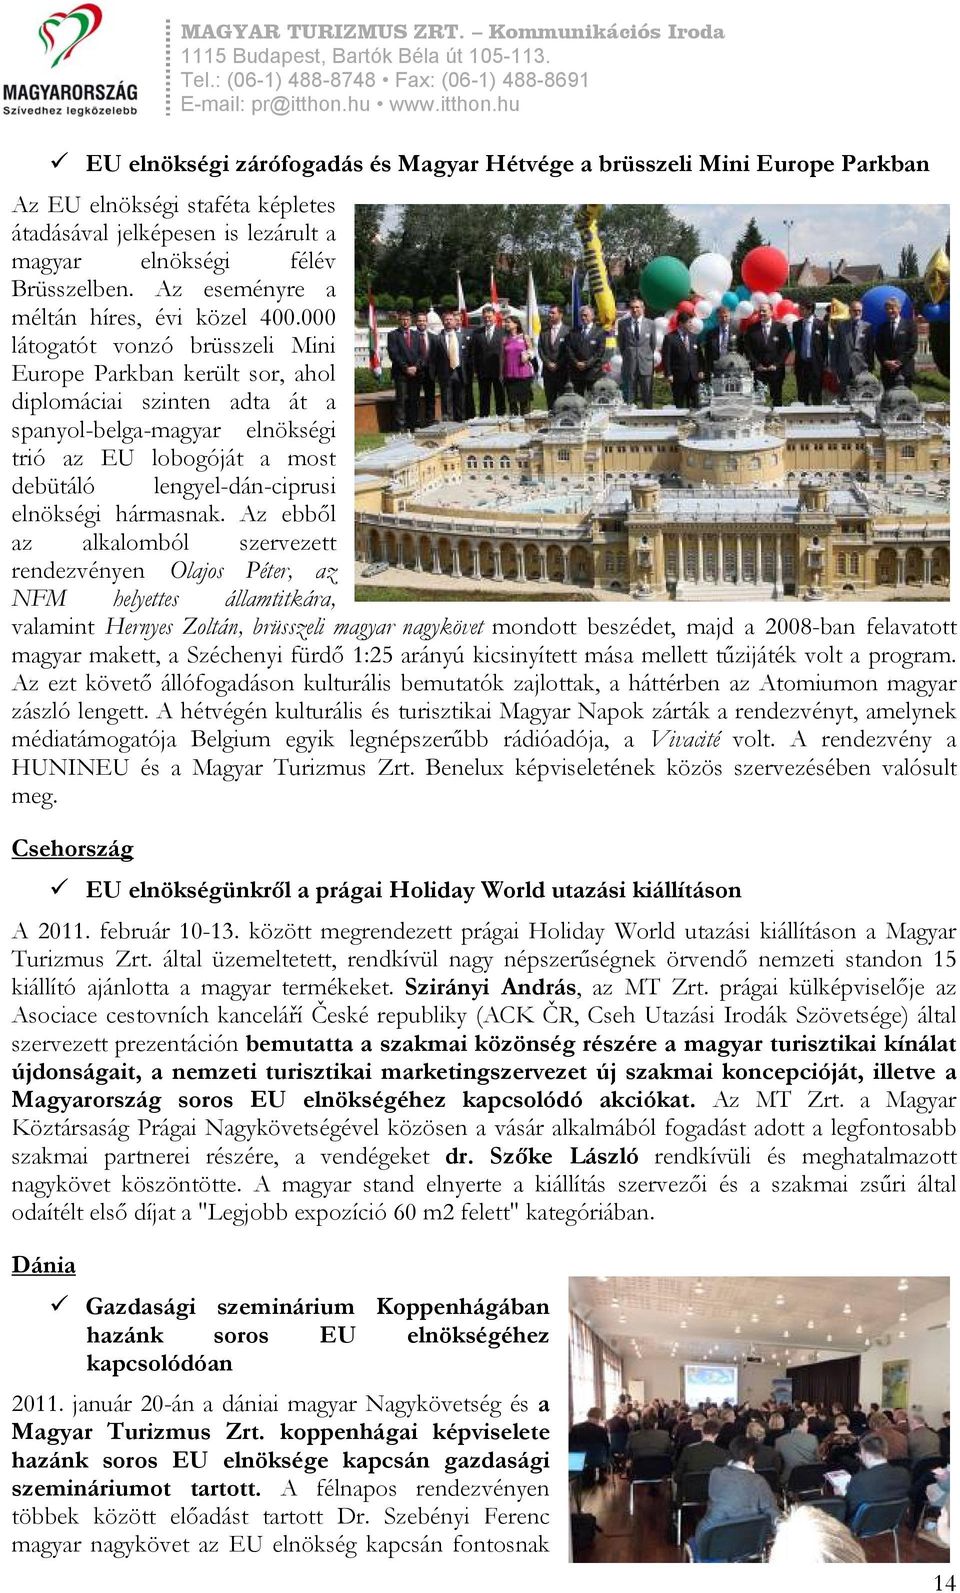 000 látogatót vonzó brüsszeli Mini Europe Parkban került sor, ahol diplomáciai szinten adta át a spanyol-belga-magyar elnökségi trió az EU lobogóját a most debütáló lengyel-dán-ciprusi elnökségi